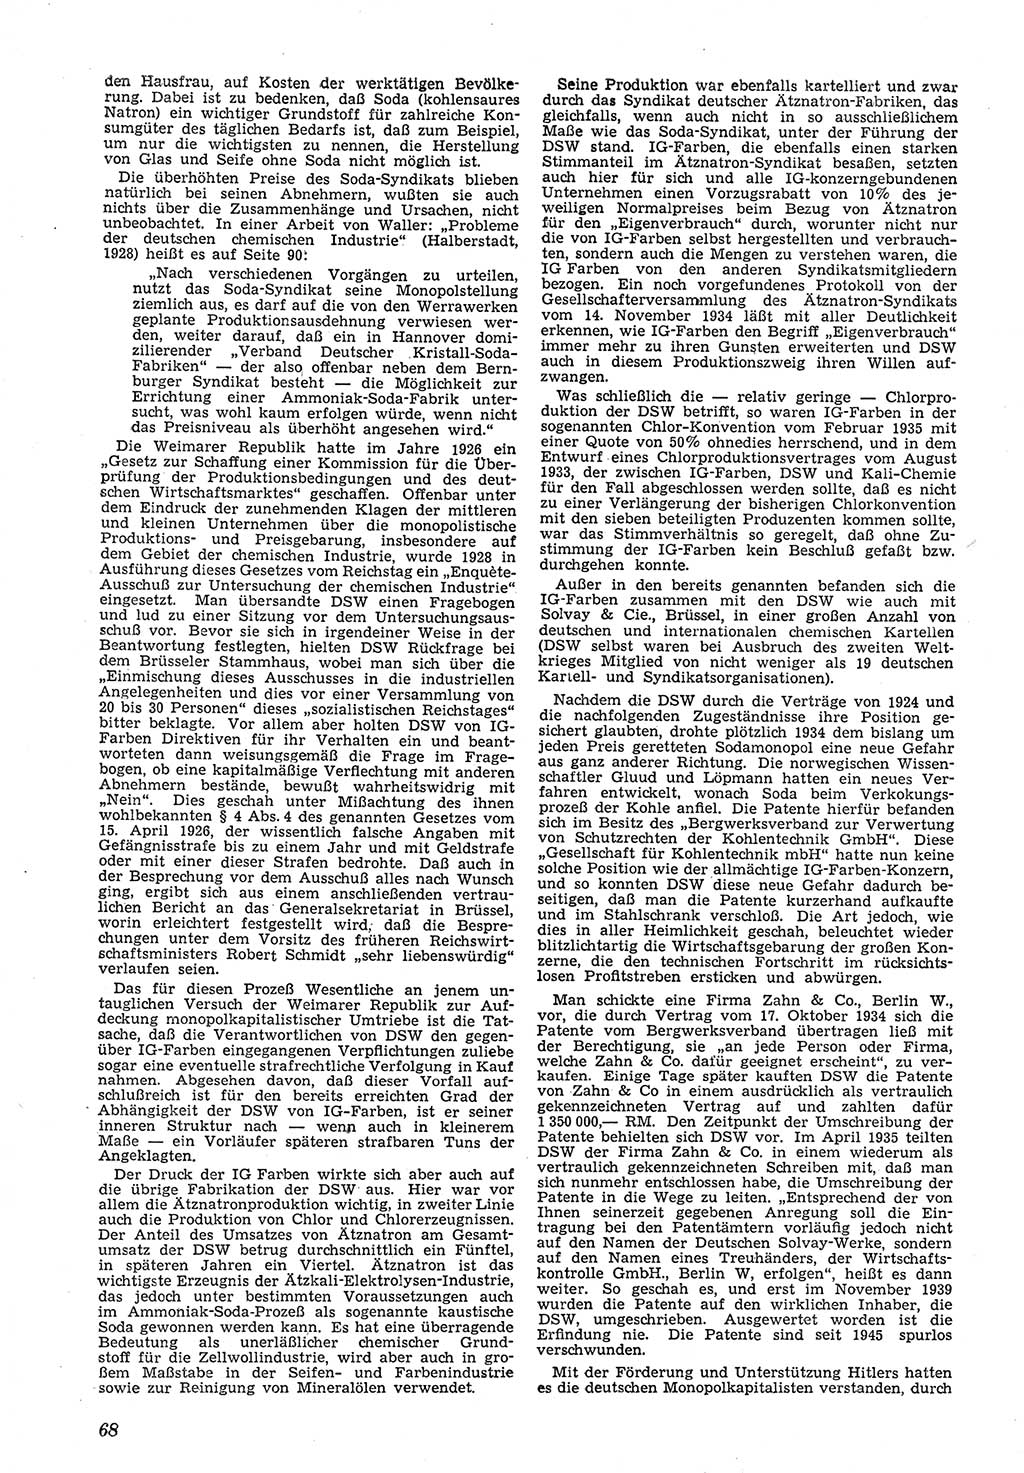 Neue Justiz (NJ), Zeitschrift für Recht und Rechtswissenschaft [Deutsche Demokratische Republik (DDR)], 5. Jahrgang 1951, Seite 68 (NJ DDR 1951, S. 68)